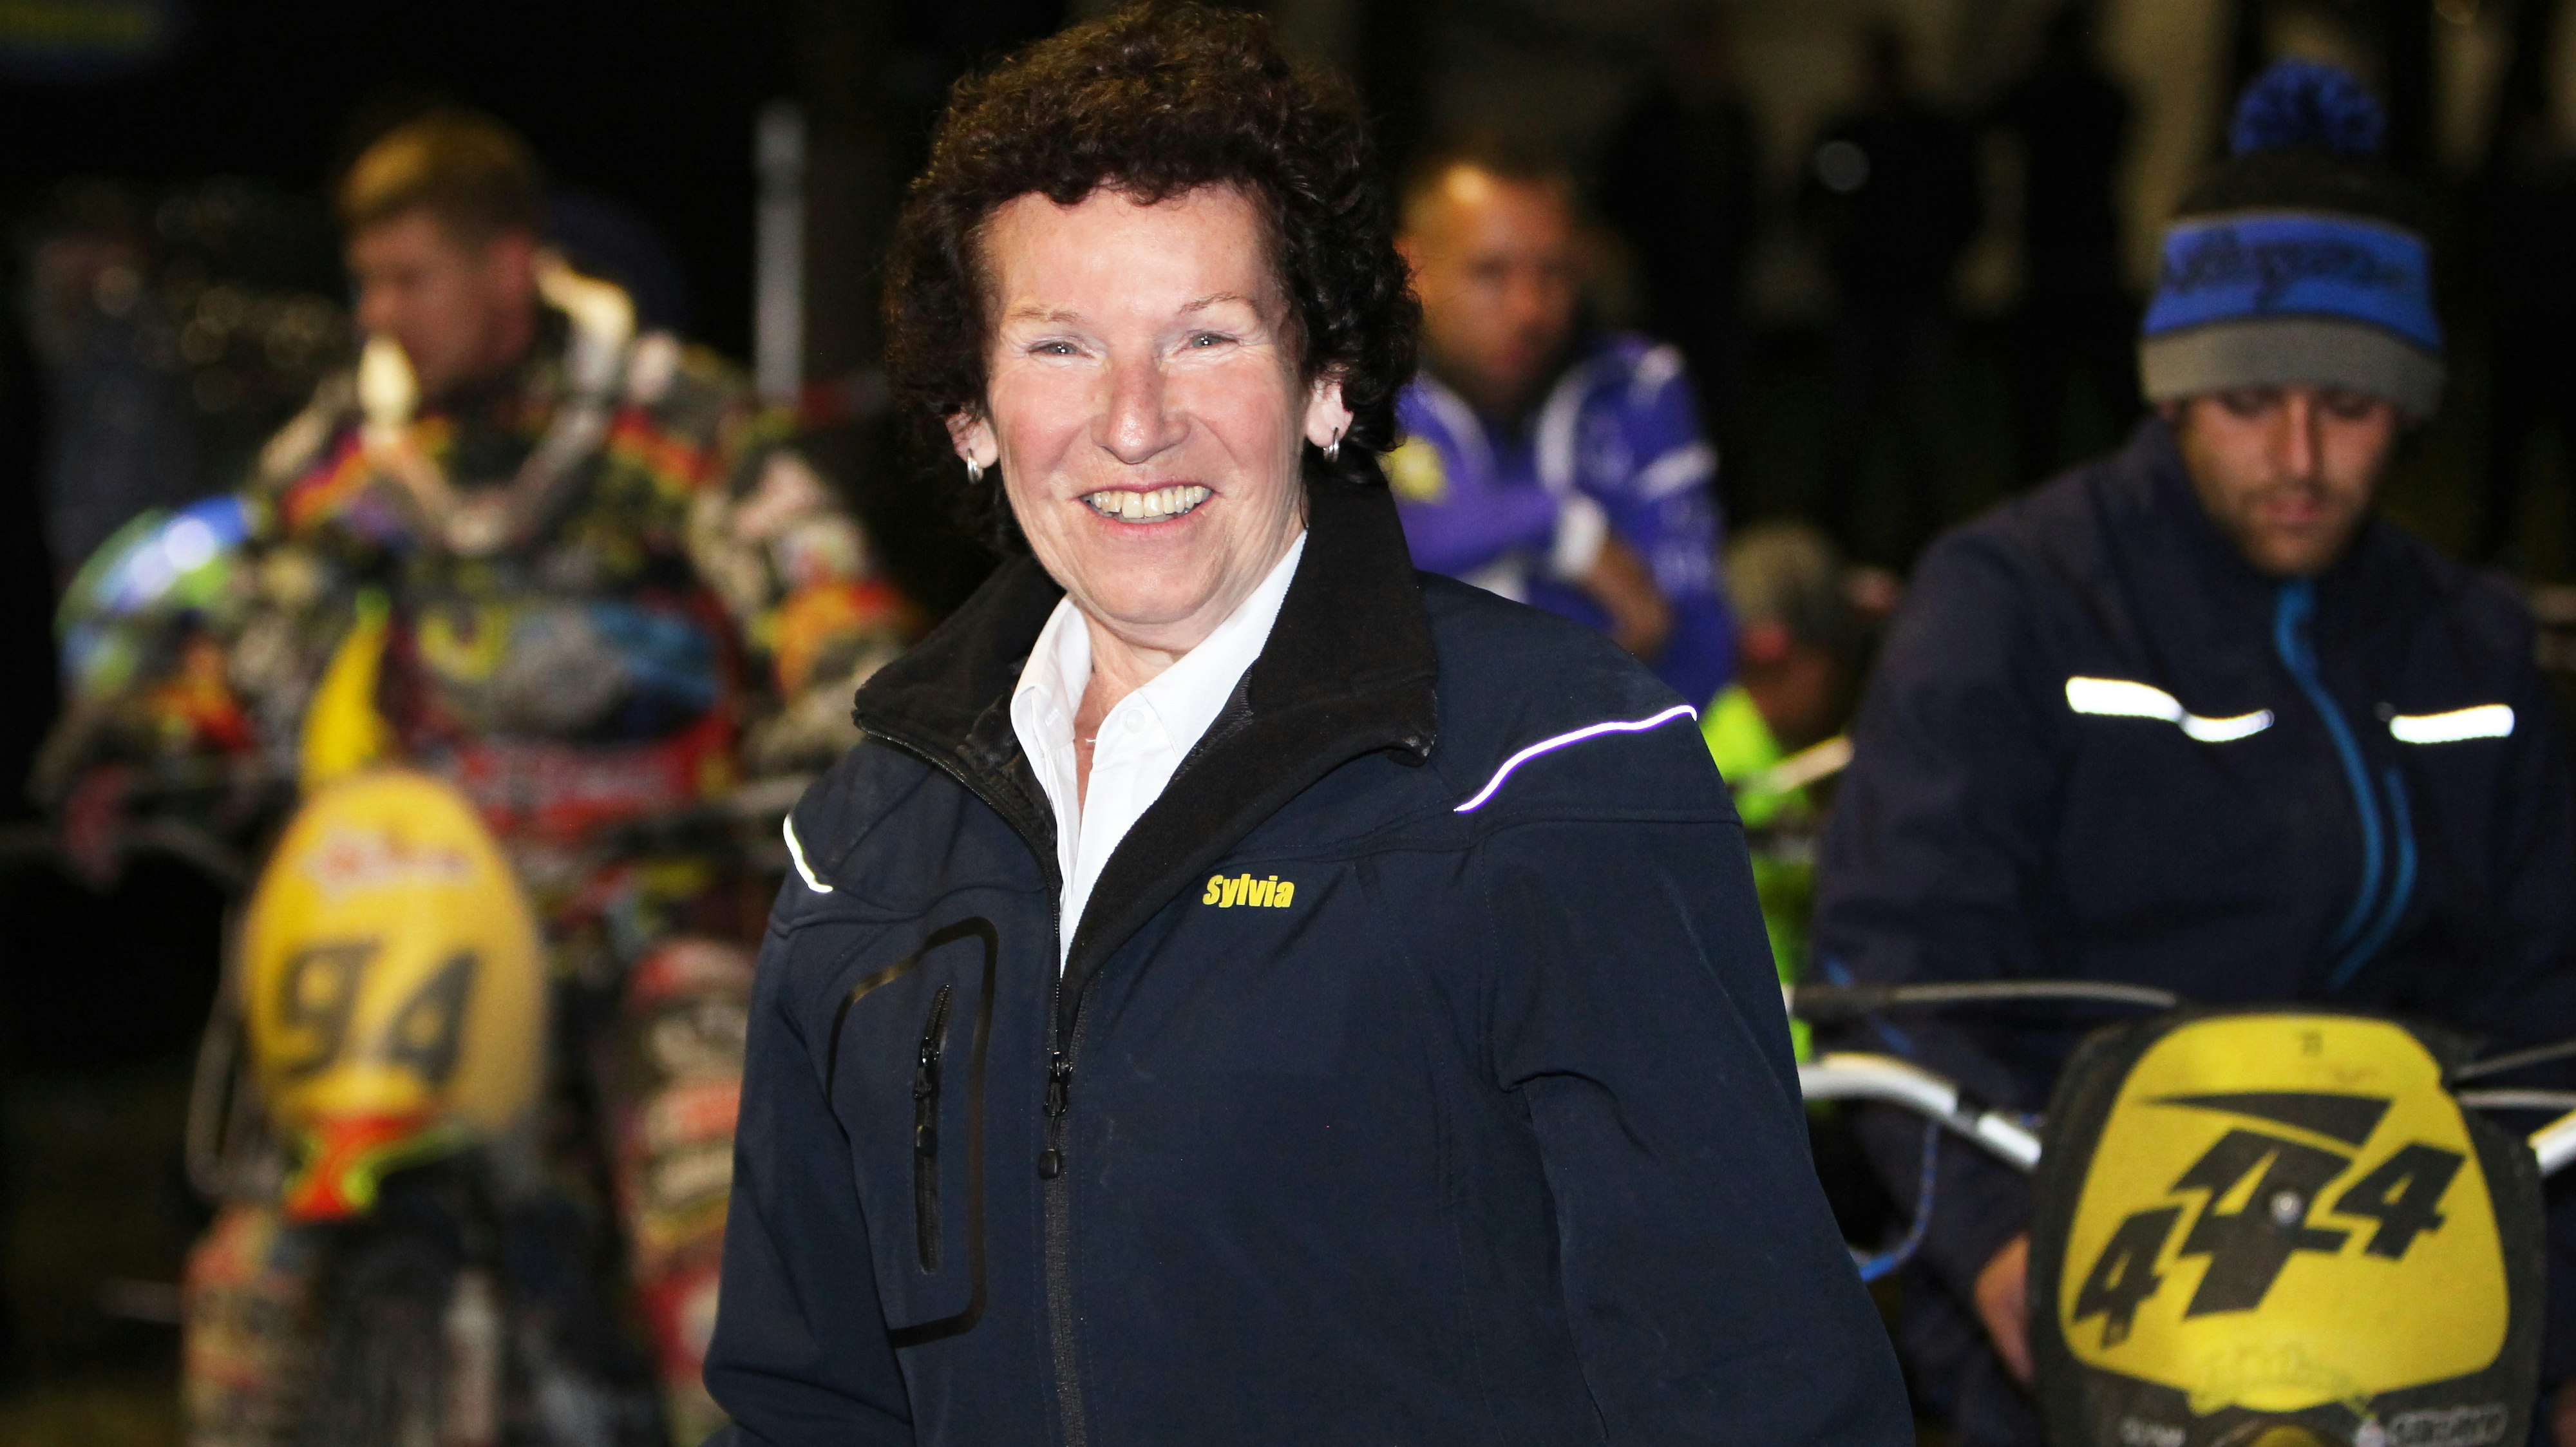 Volle Kraft voraus: Sylvia Wollering, Klubchefin des AC Vechta, freut sich auf das Rennen im nächsten Jahr. Foto: Schikora